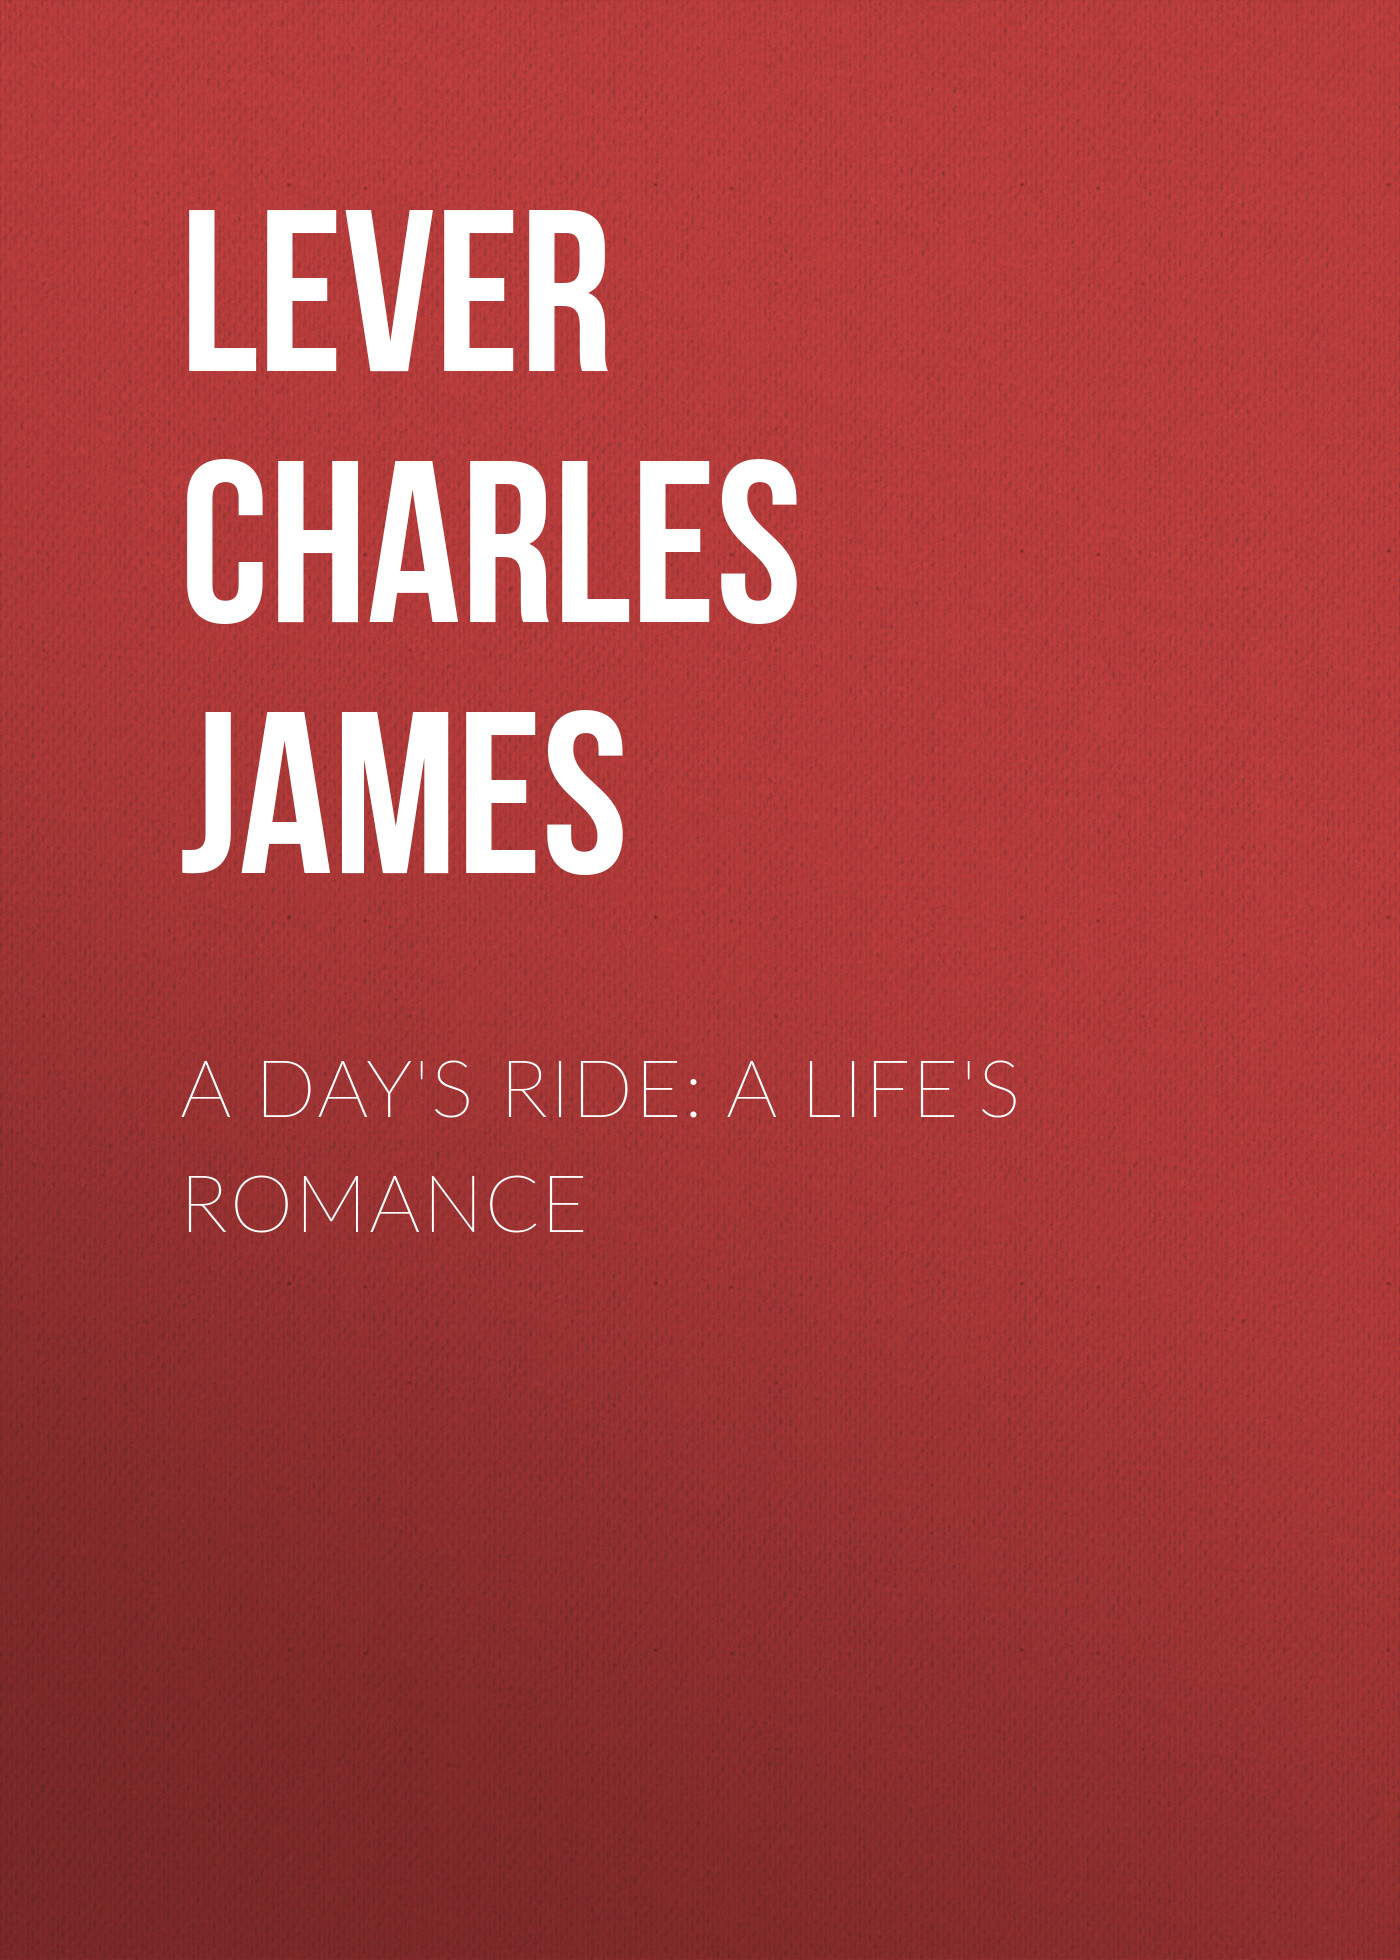 Книга A Day's Ride: A Life's Romance из серии , созданная Charles Lever, может относится к жанру Литература 19 века, Зарубежная старинная литература, Зарубежная классика. Стоимость электронной книги A Day's Ride: A Life's Romance с идентификатором 25448308 составляет 0 руб.